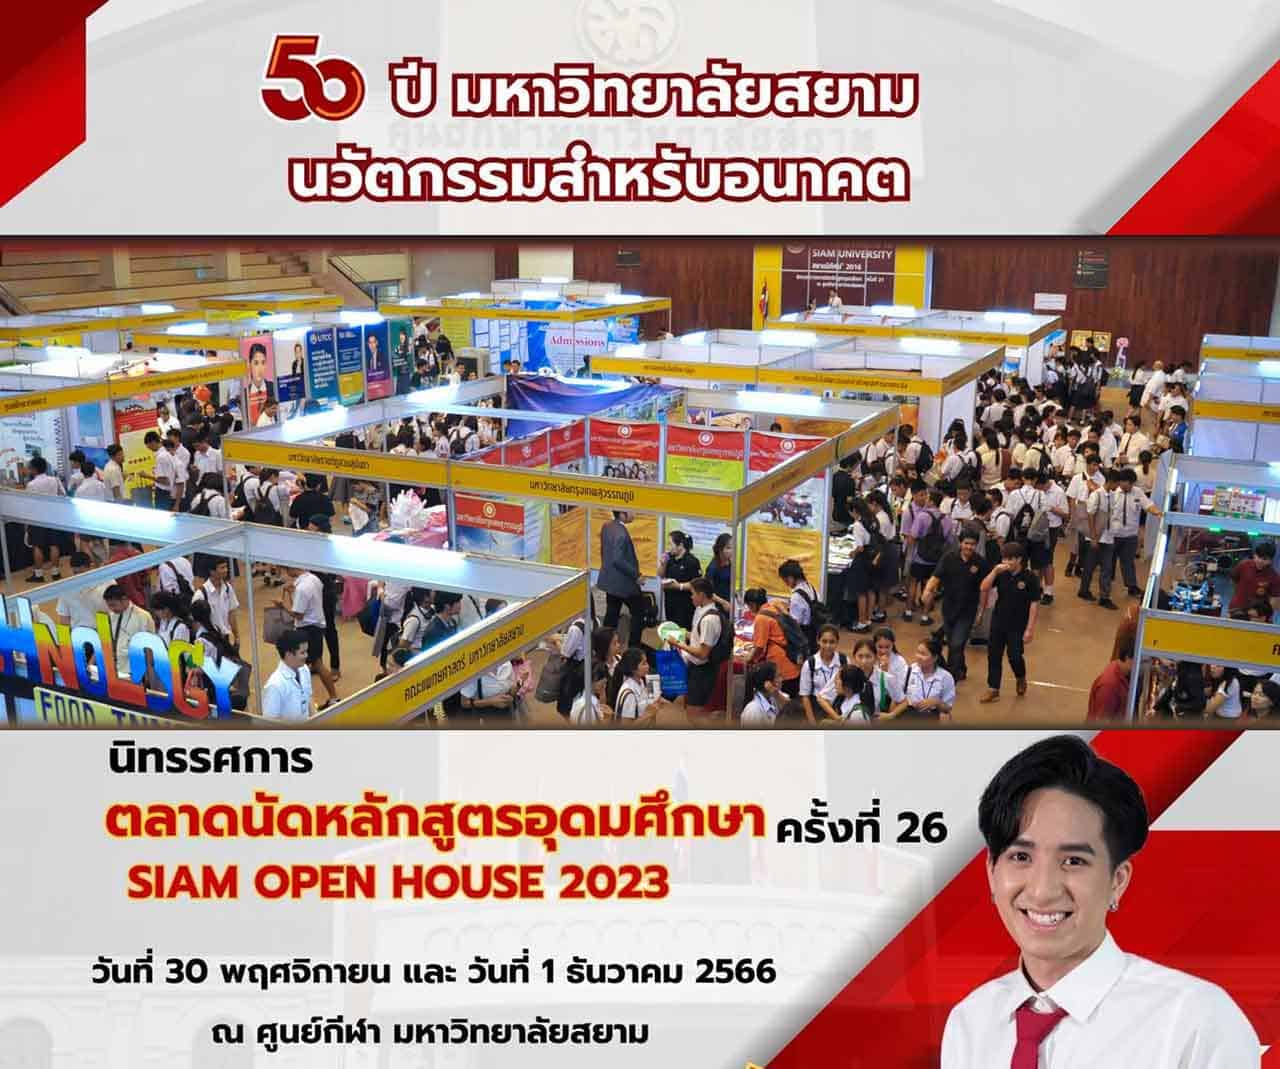 ตลาดนักหลักสูตรอุดมศึกษา มหาวิทยาลัยสยาม ครั้งที่ 26 2566 Siam Open House 2023 Siam University